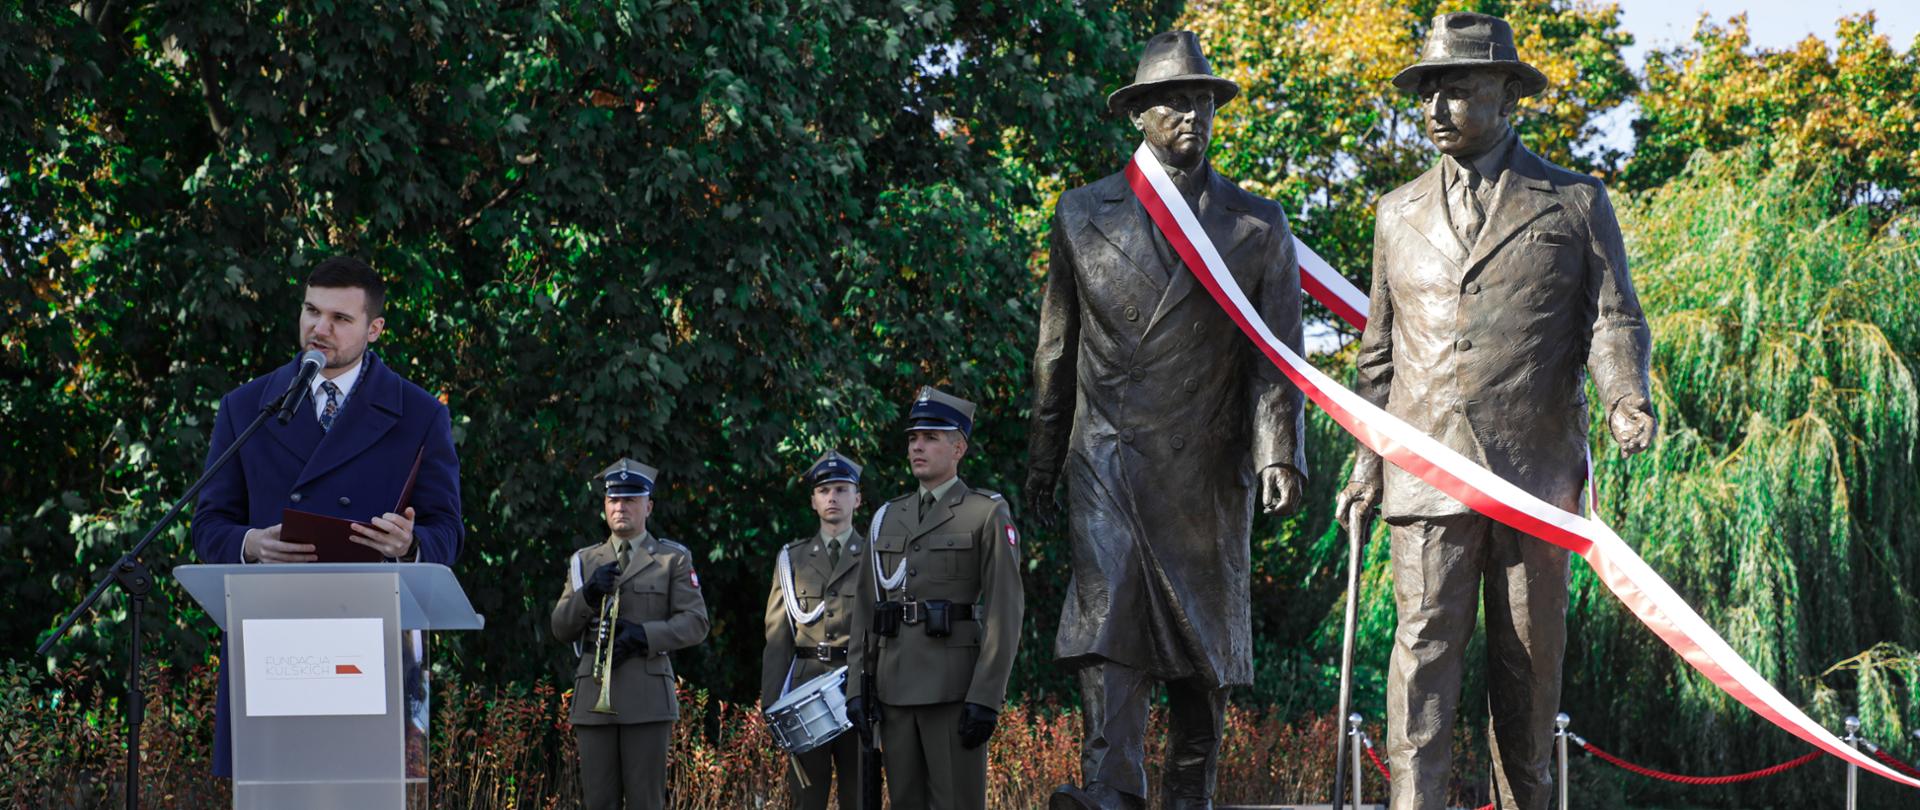 Pomnik Prezydentów Wielkiej Warszawy stanął na Bulwarach nad Wisłą, fot. Danuta Matloch